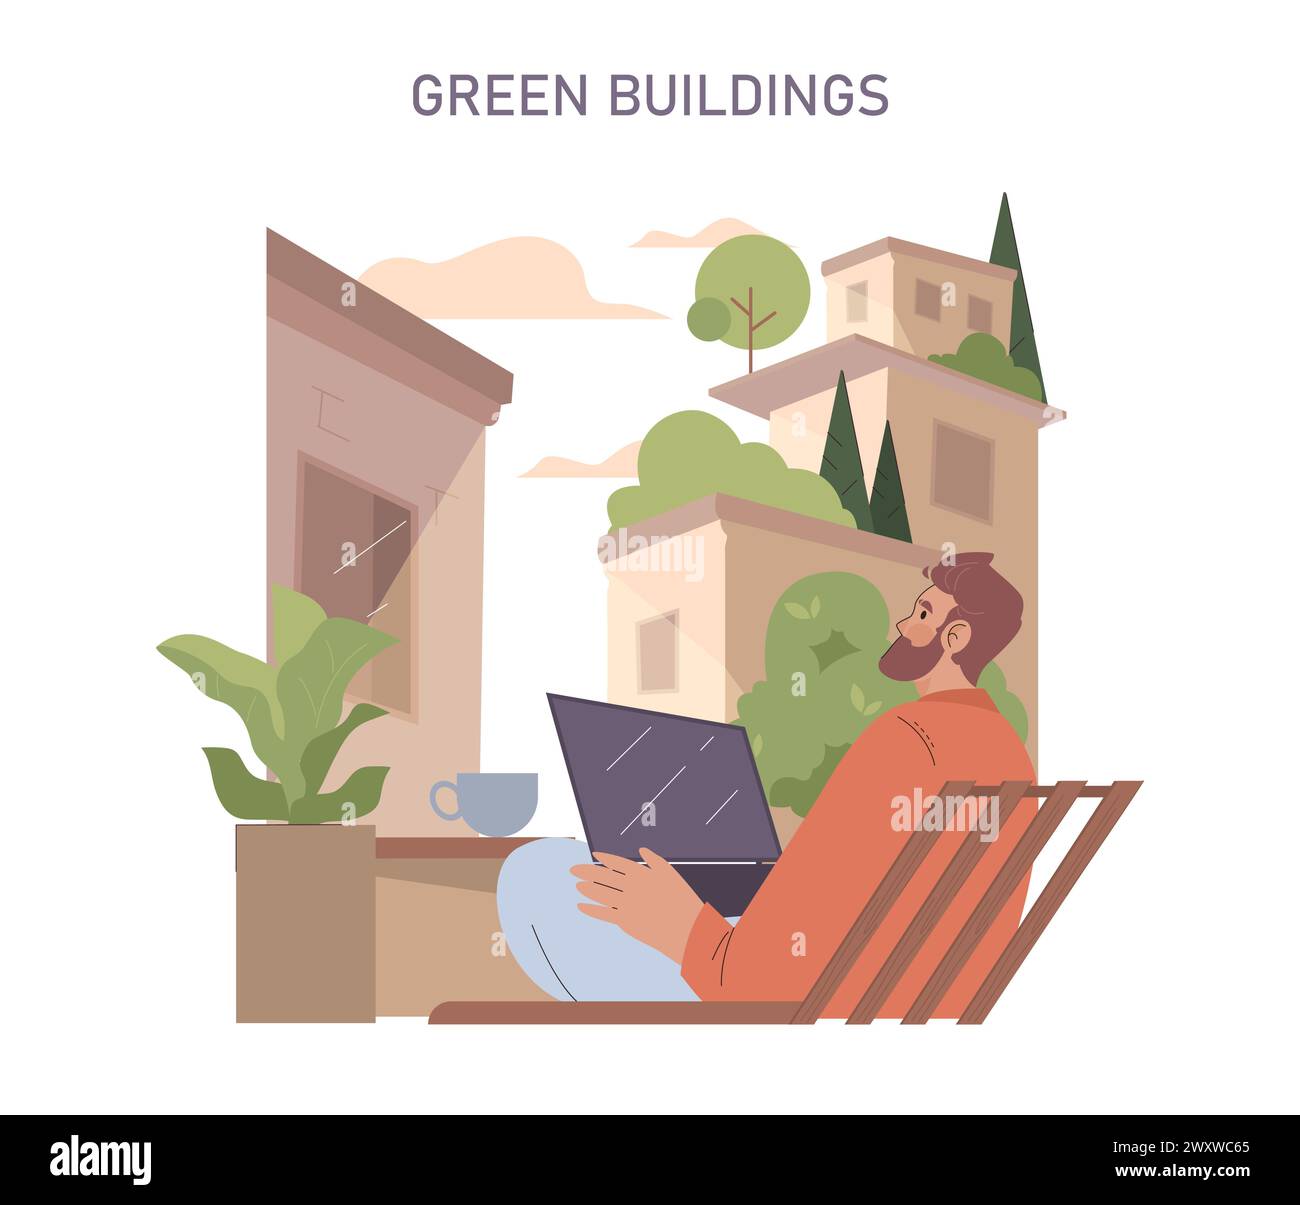 Edifici verdi allestiti. Gli abitanti urbani godono di una vita sostenibile con giardini sul tetto. Integrazione della natura e dell'architettura nella vita cittadina. Habitat ecologico che favorisce il benessere e la produttività. Illustrazione Vettoriale